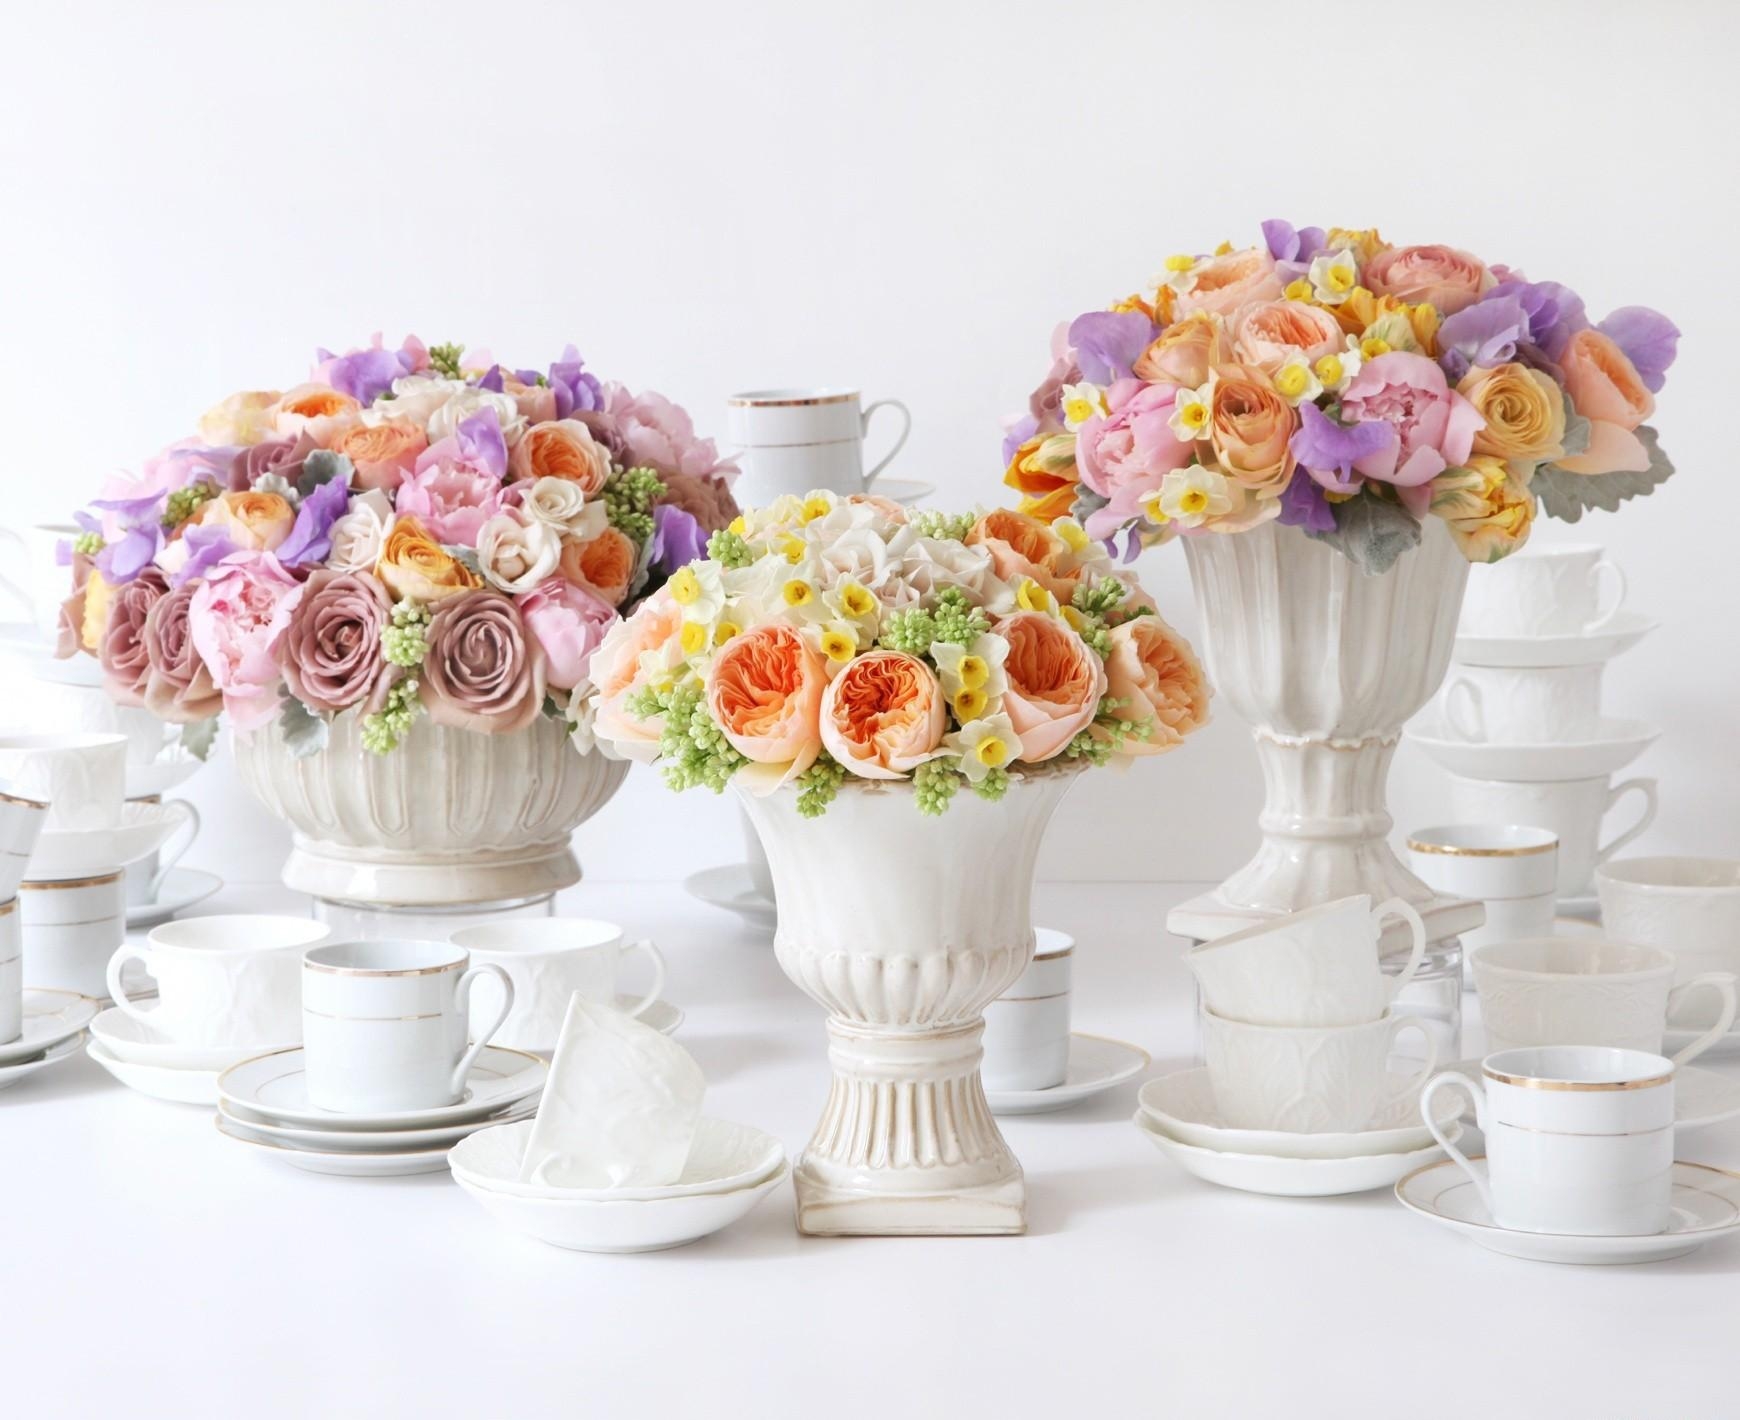 roses, narcissussi, flowers, bouquets, ranunculus, ranunkulus, vases, porcelain 4K Ultra